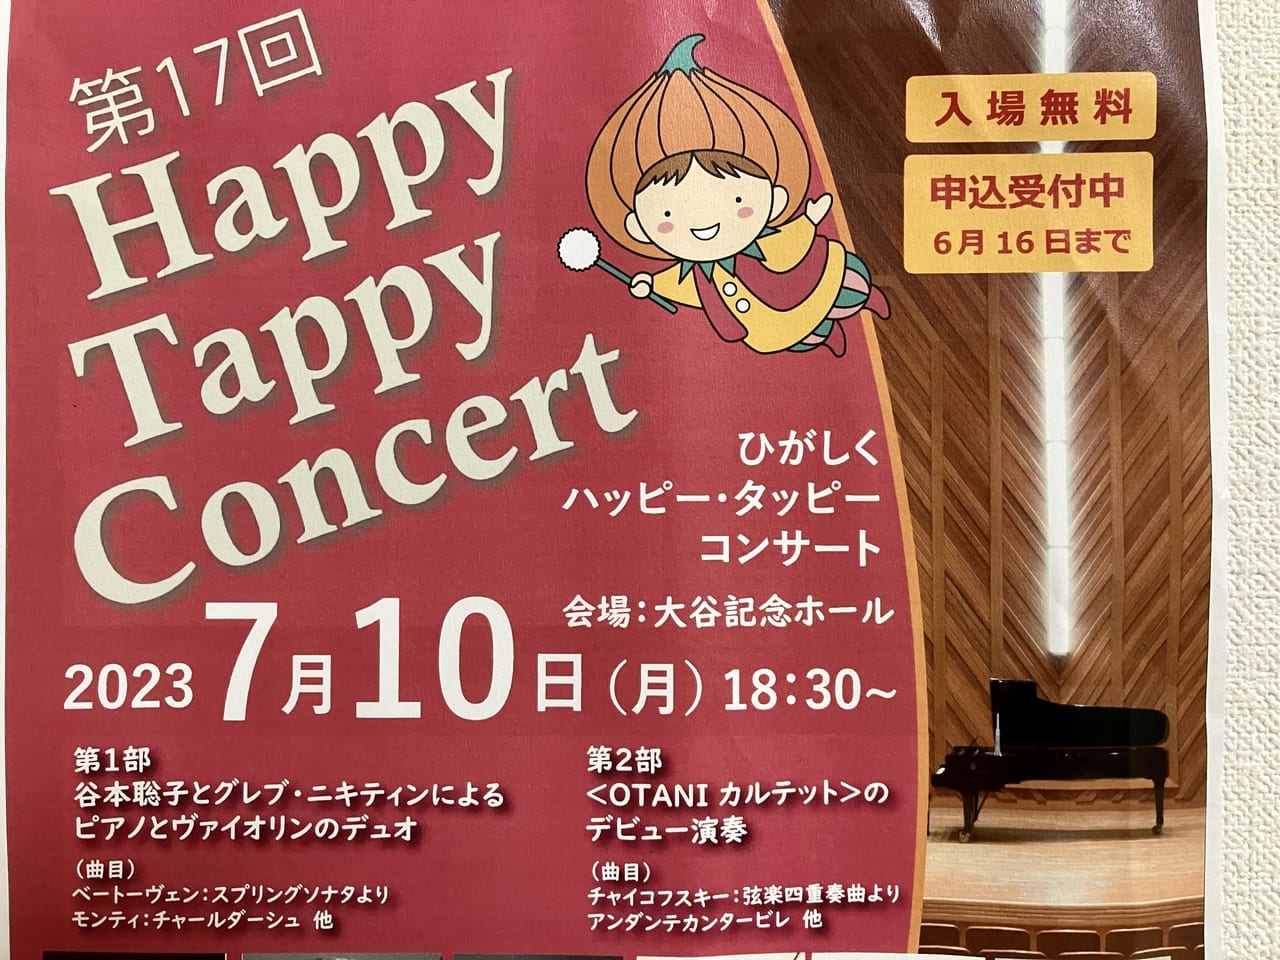 札幌大谷大学で開催される観覧無料の「ひがしくハッピー・タッピーコンサート」に行ってみよう。